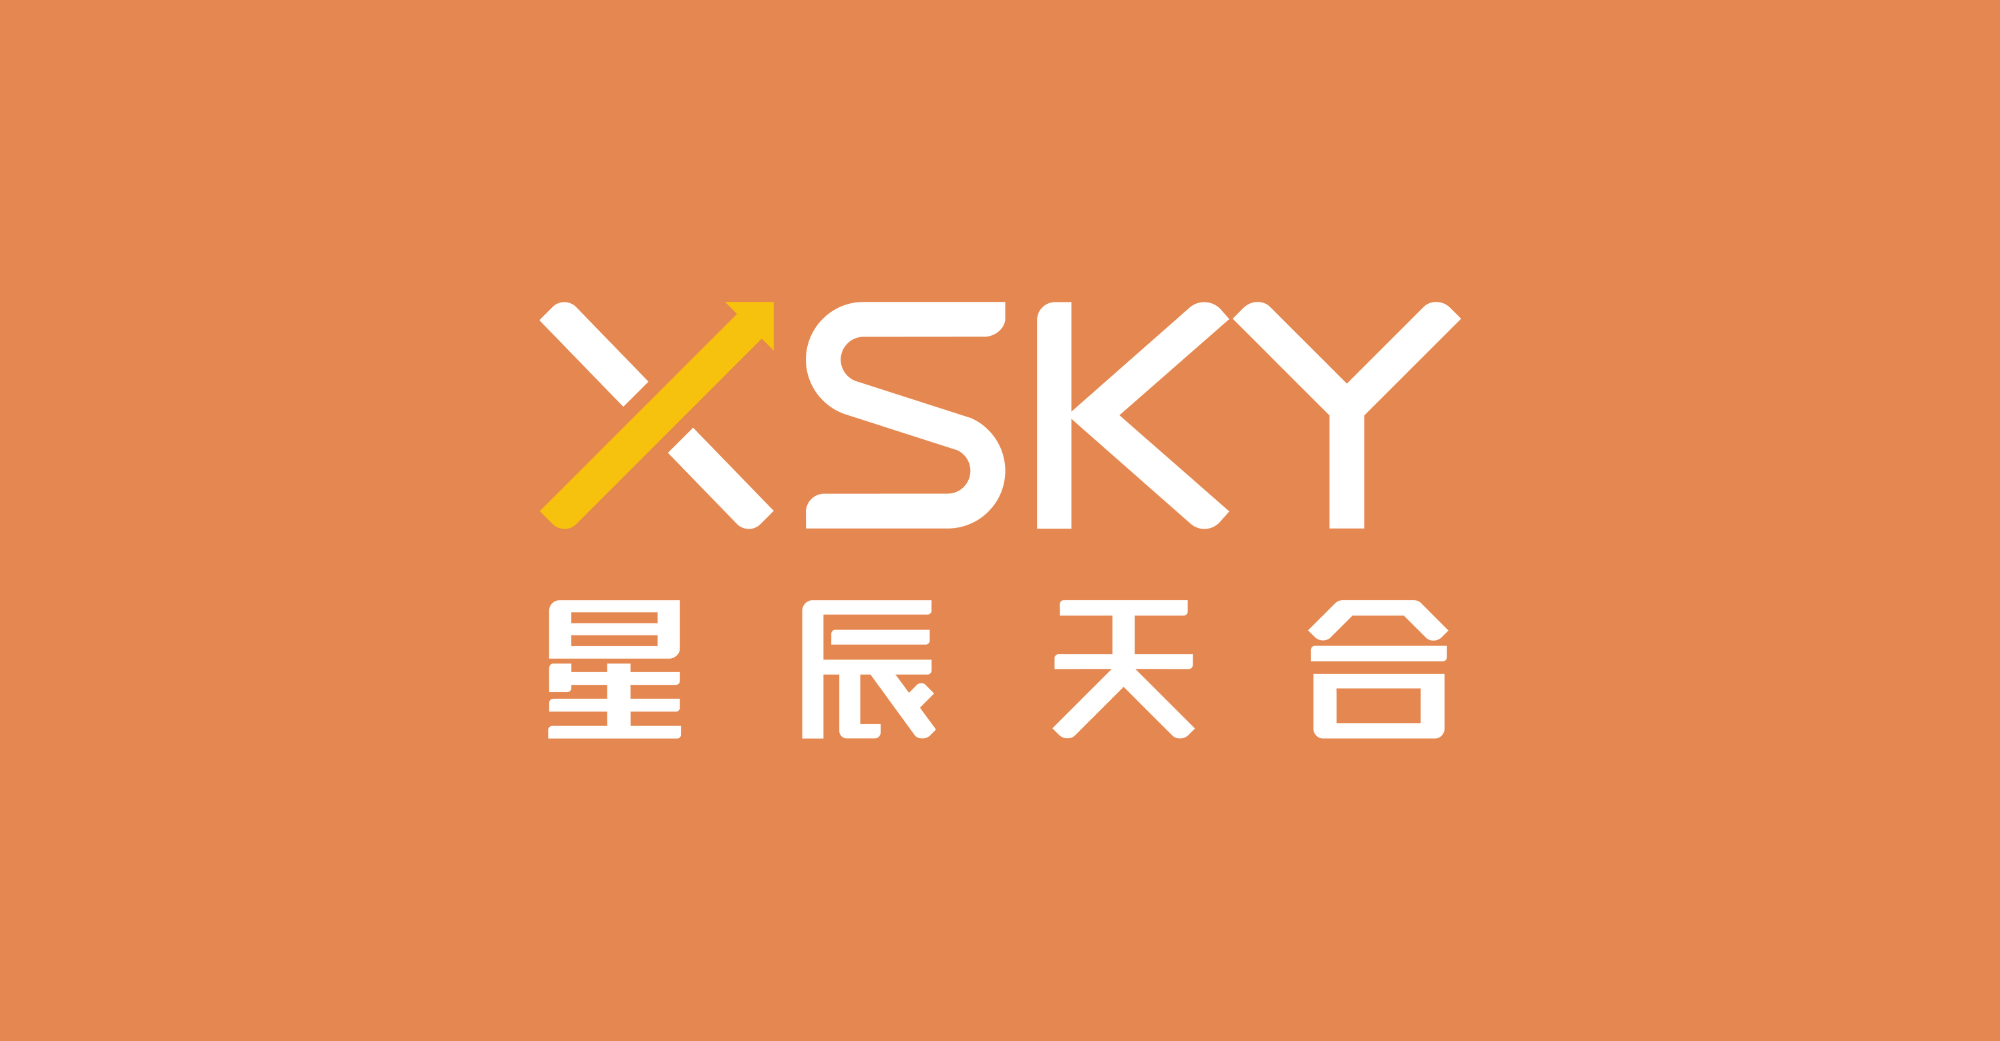 XSky को 62.8 मिलियन अमरीकी डालर का एफ राउंड फाइनेंसिंग प्राप्त हुआ, जिसमें स्रोत पूंजी निवेश में शामिल थी